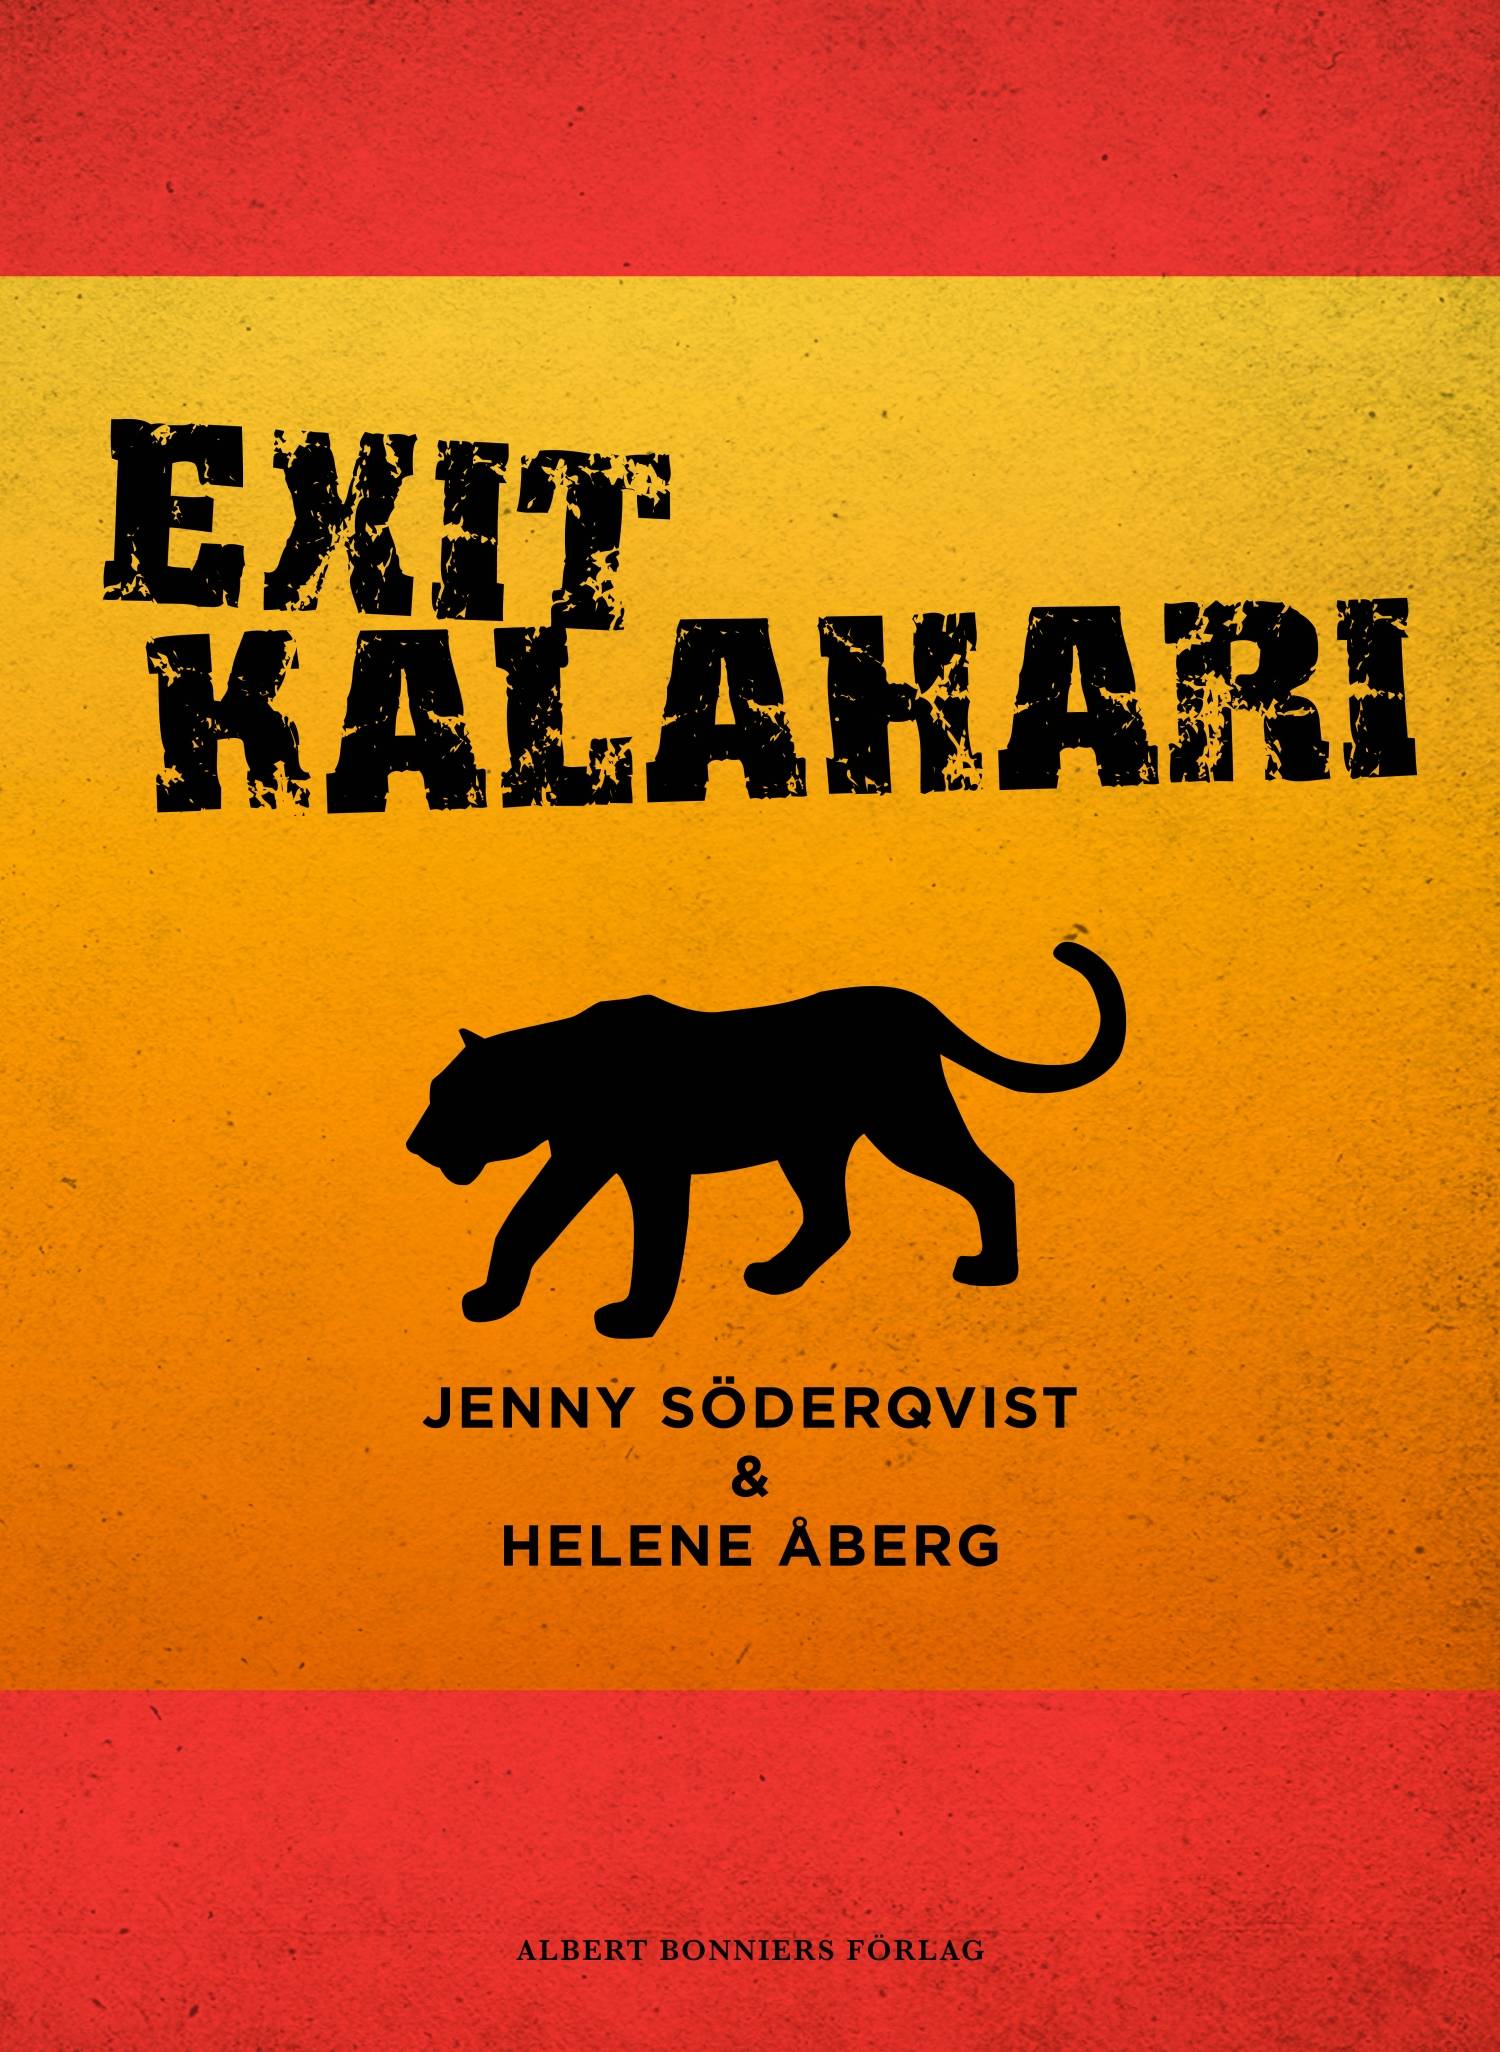 Exit Kalahari